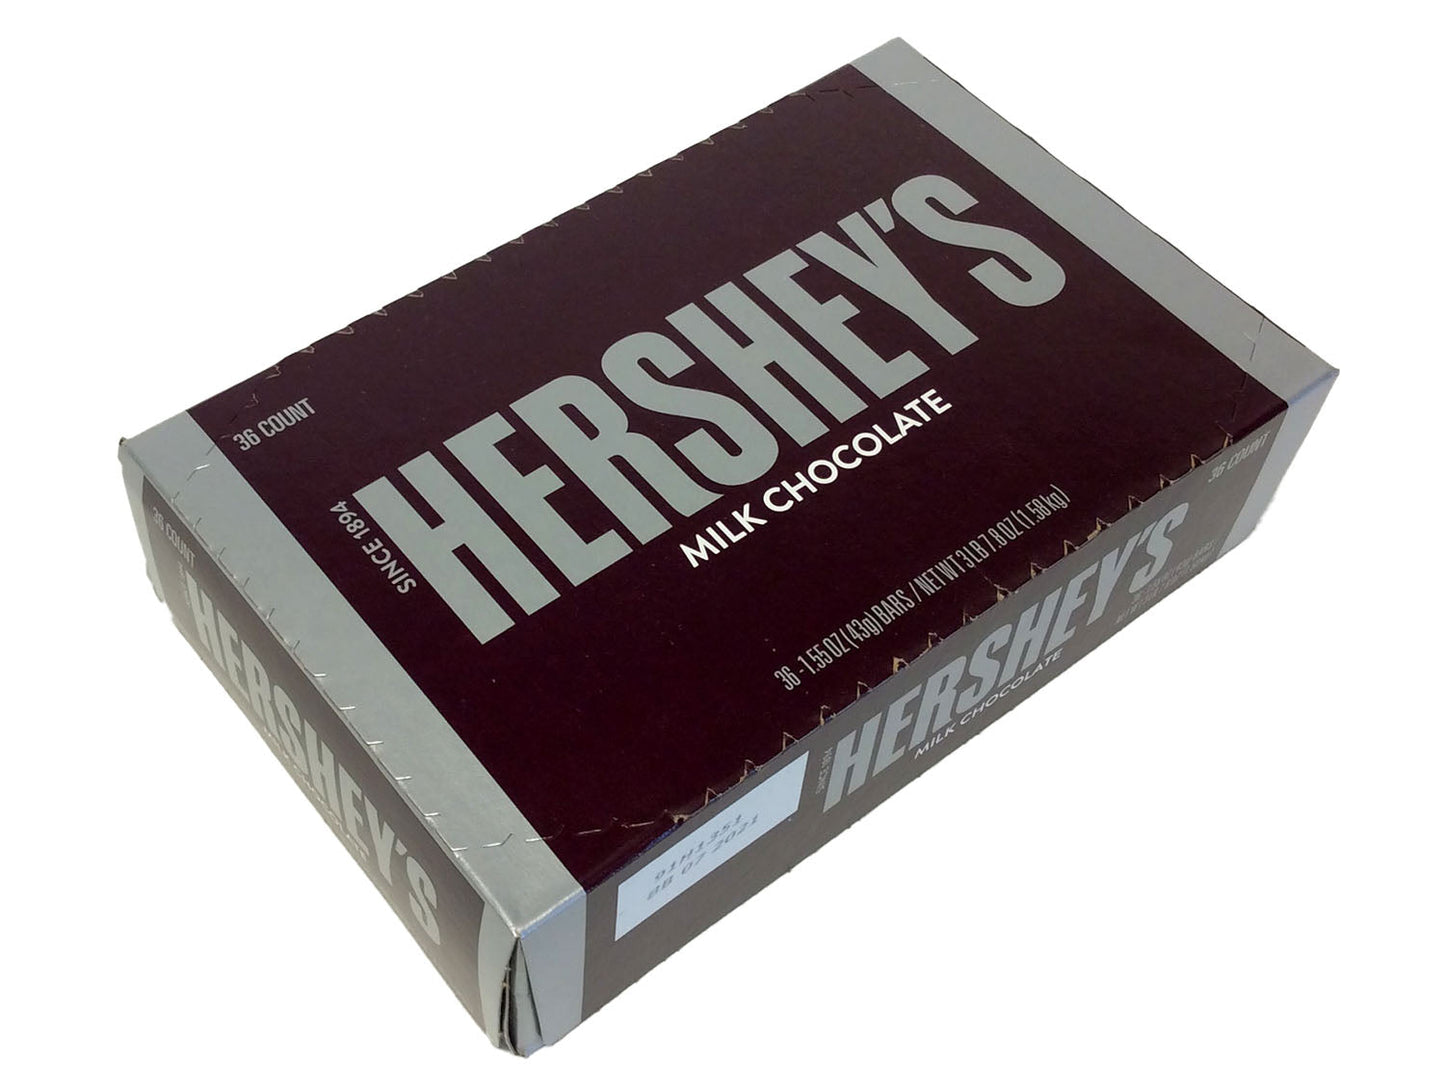 Hershey's Milk Chocolate Bar - 1.55 oz - box of 36 bars